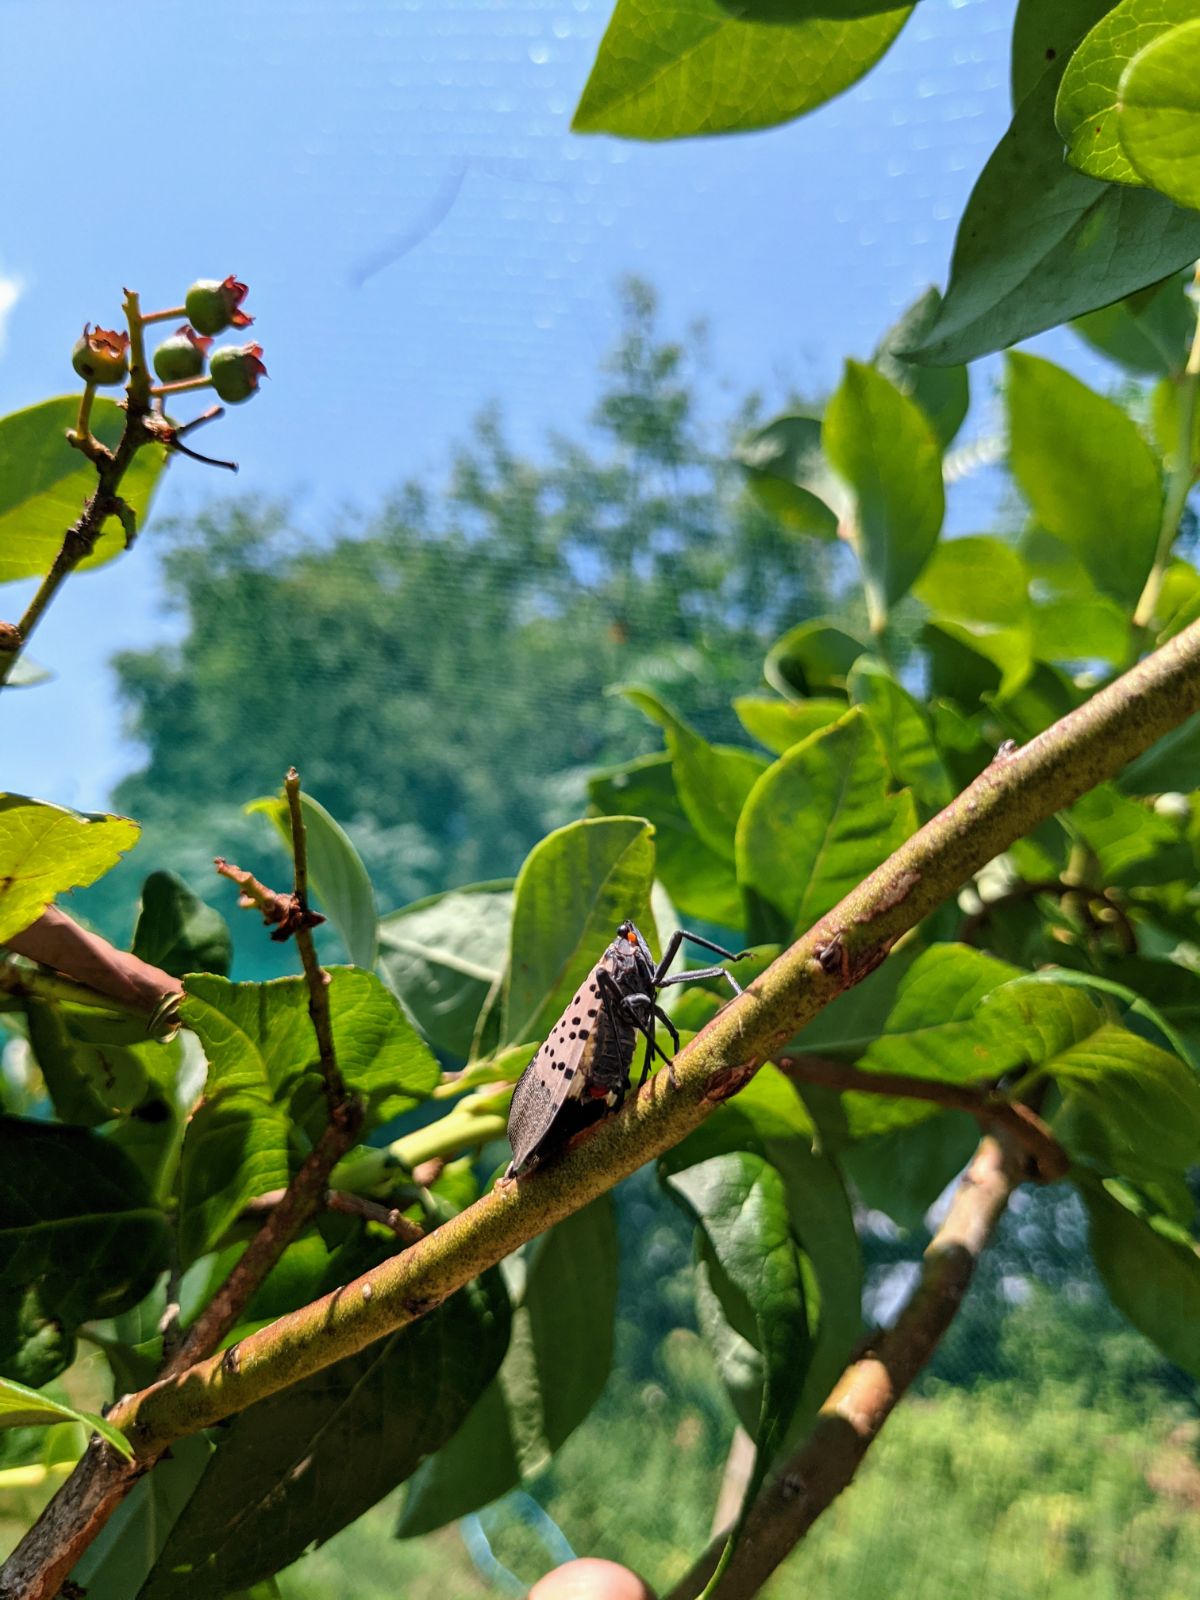 Spotted Lanternfly on Blueberry Bush